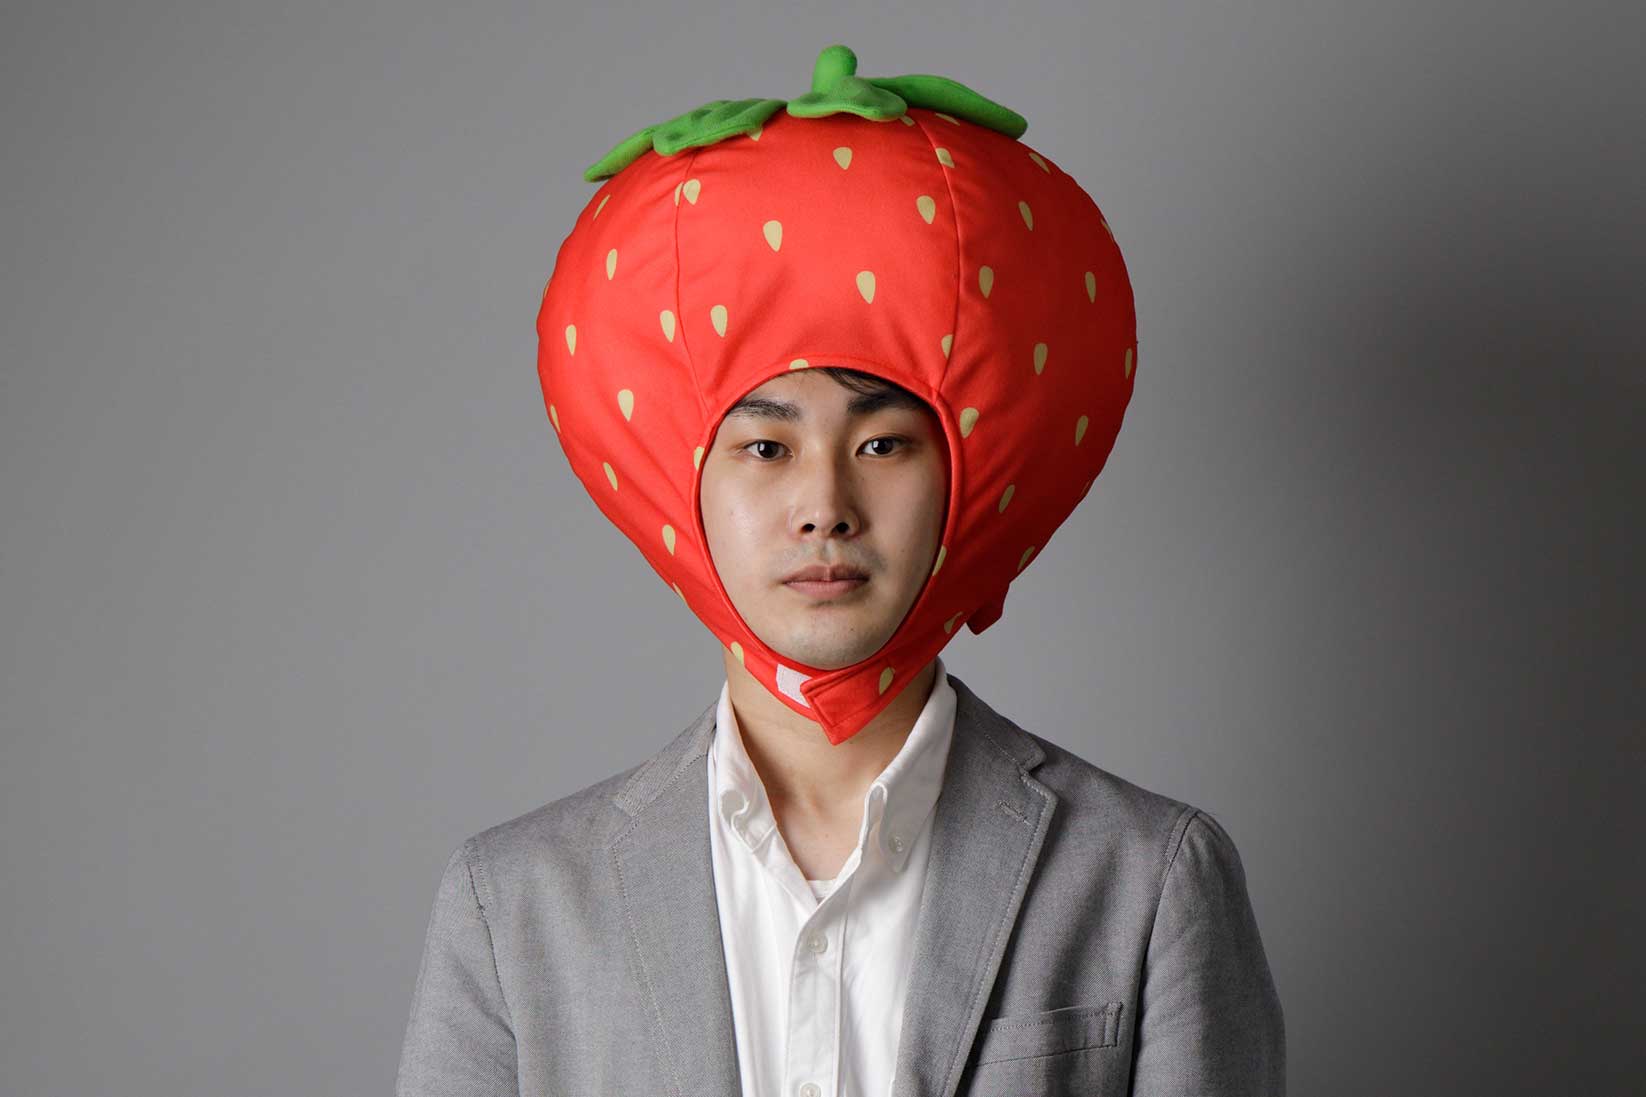 記事内にもあるように「イチゴ好き」であることが事業領域を決めるきっかけにもなったという市川氏。SNSのプロフィール画像でもイチゴのかぶり物をかぶっている